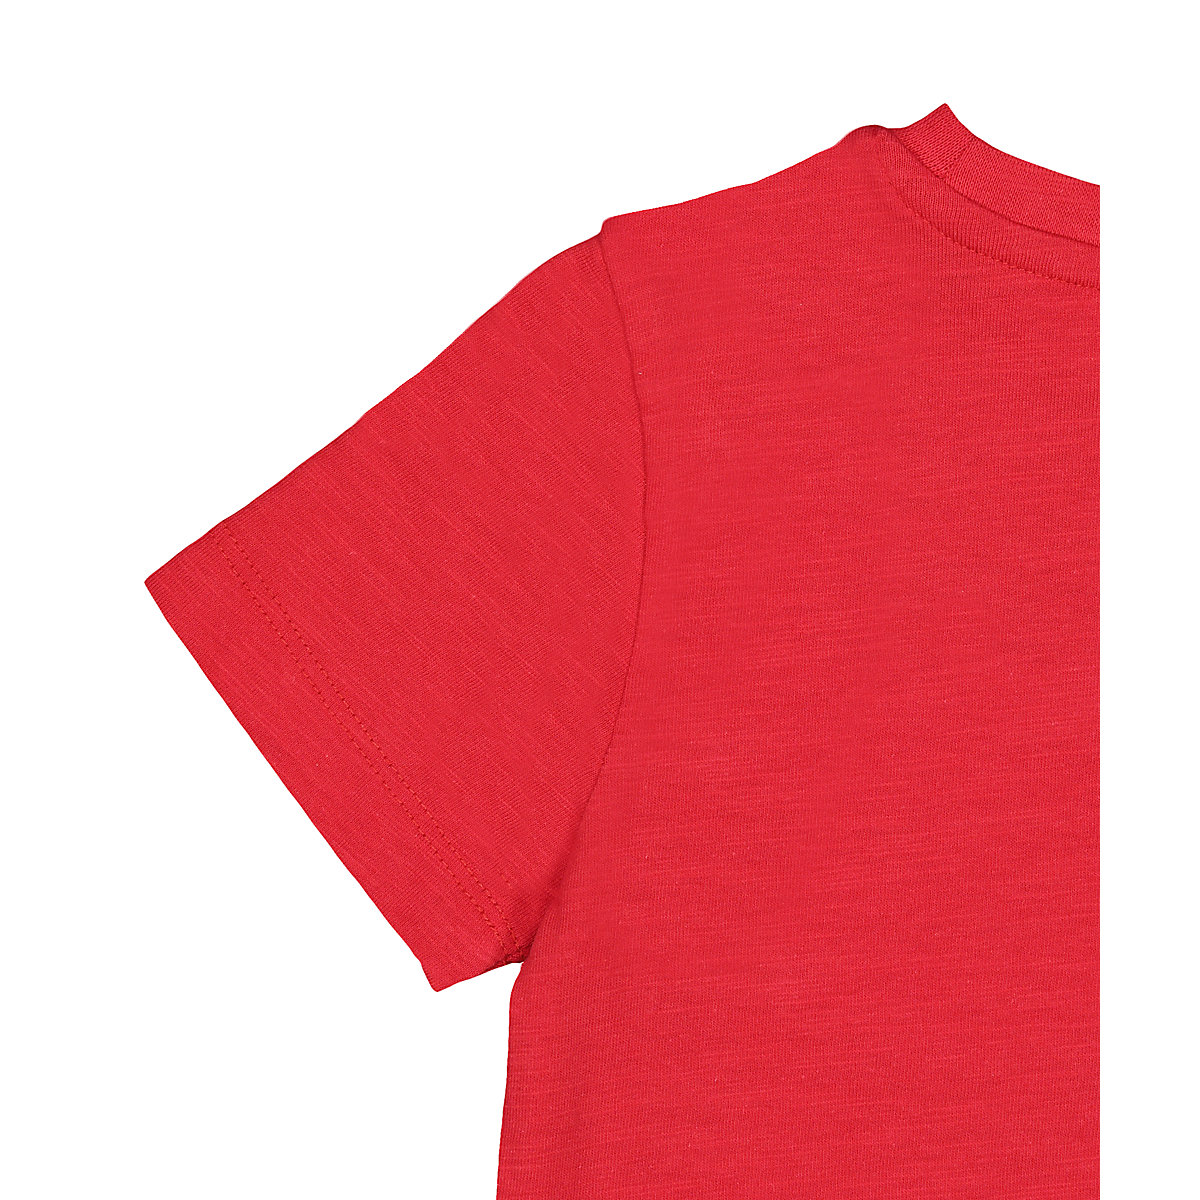 تی شرت پسرانه 27401 سایز 1.5 تا 10 سال مارک MOTHERCARE